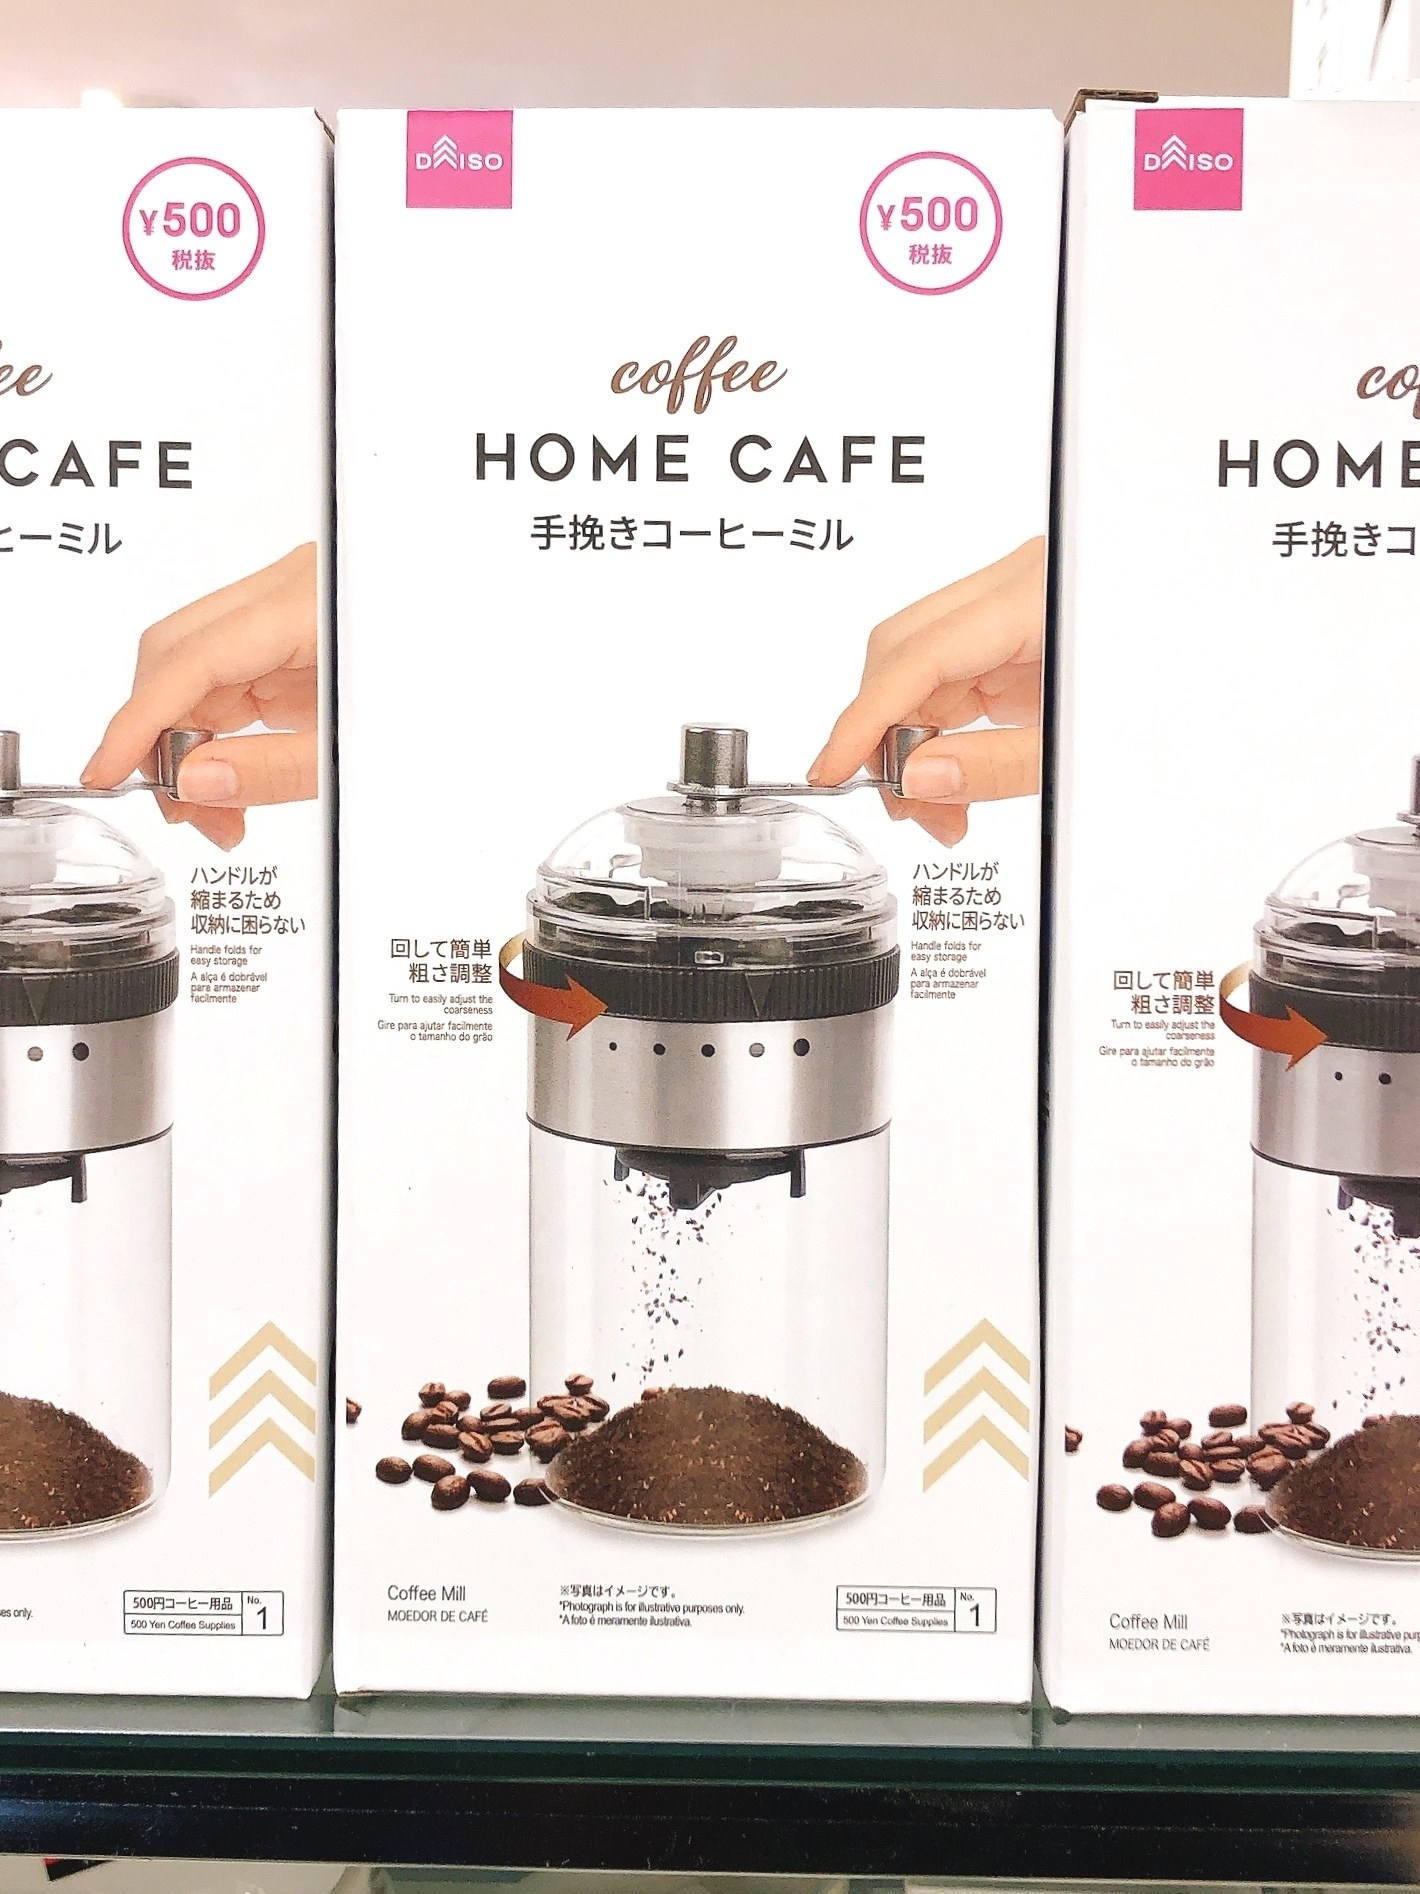 画像はコーヒー豆とフレンチプレスが写ったコーヒーメーカーのパッケージです。